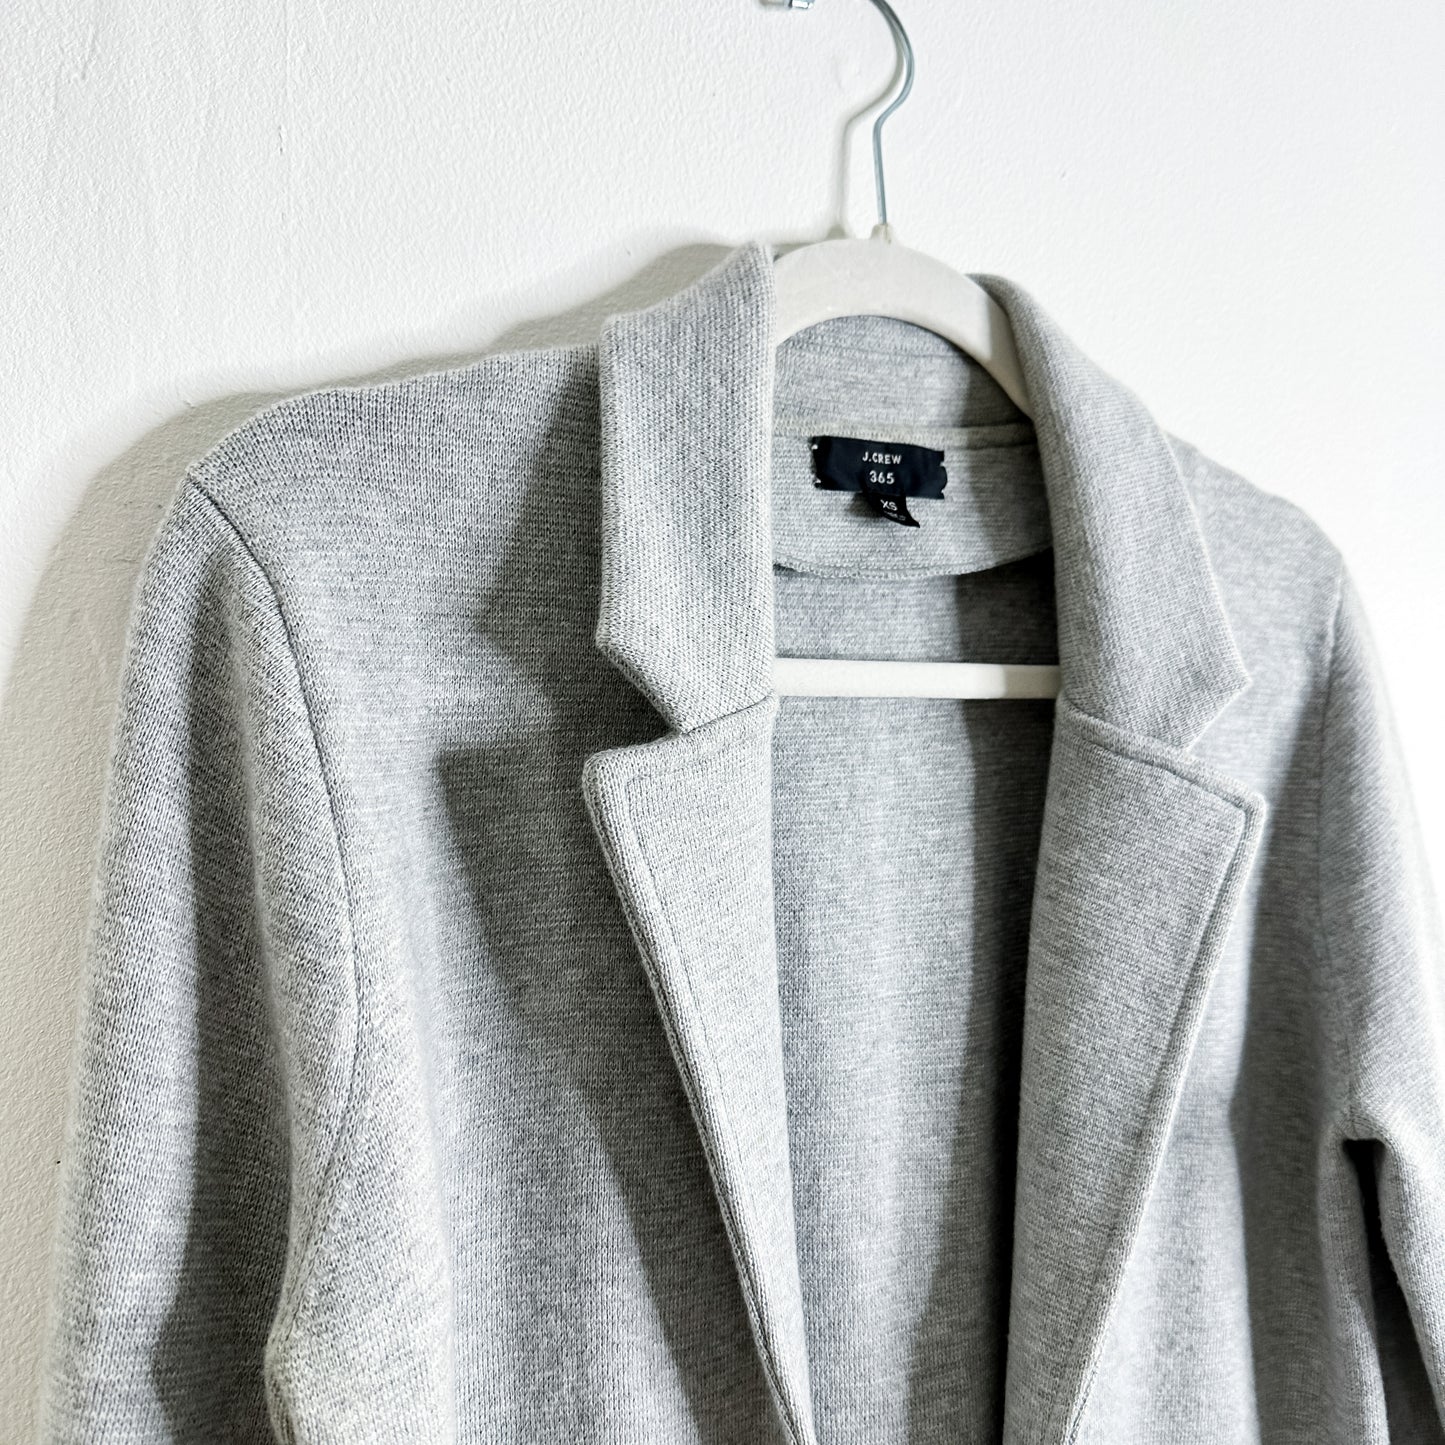 J. Crew Grey Knit Cardigan Blazer (fits XS)